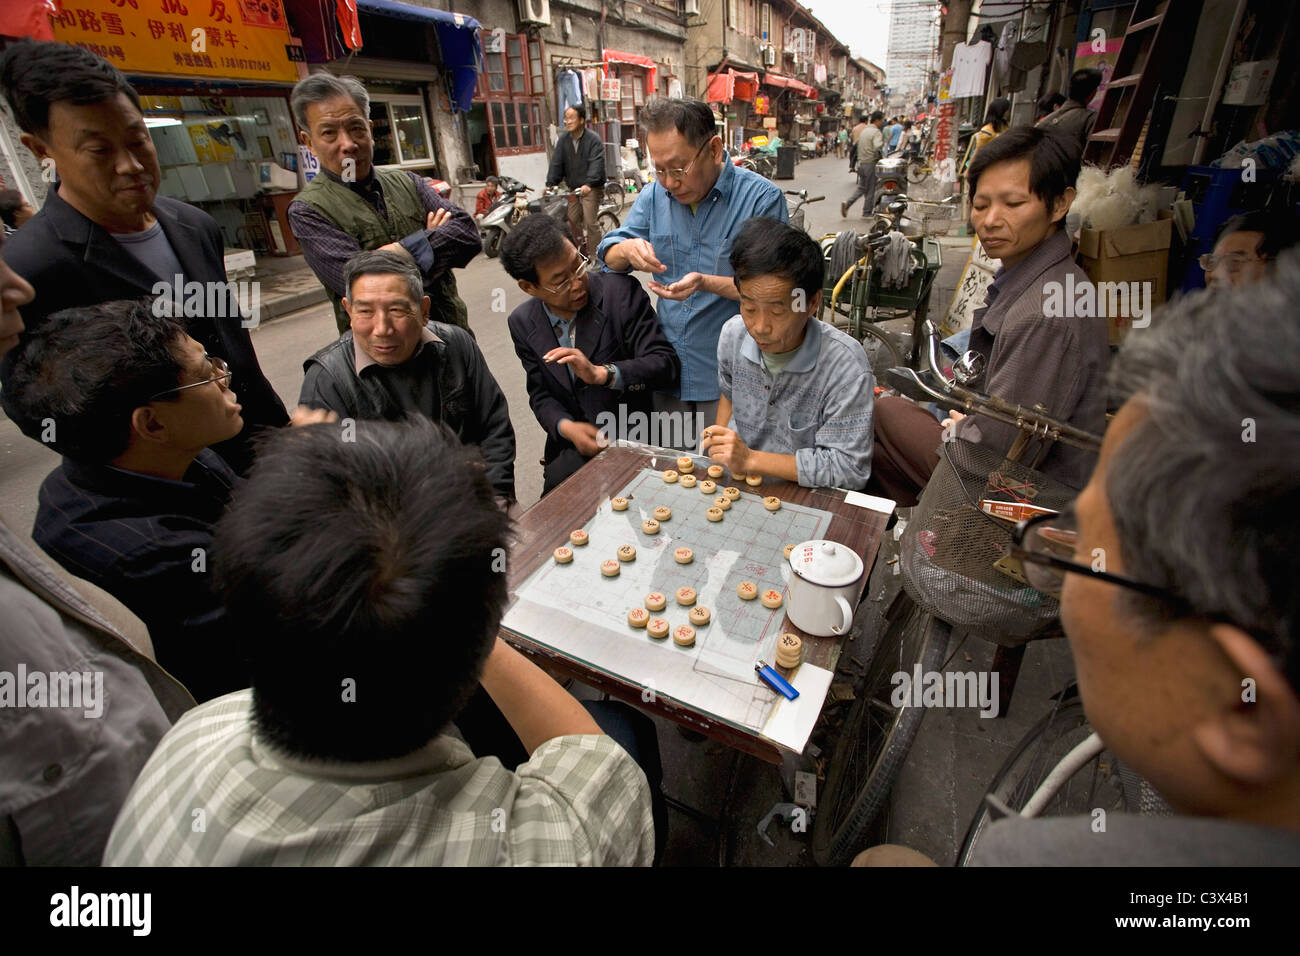 La Chine, Shanghai, des scènes de rue dans la vieille ville. Jouer jeu. Banque D'Images